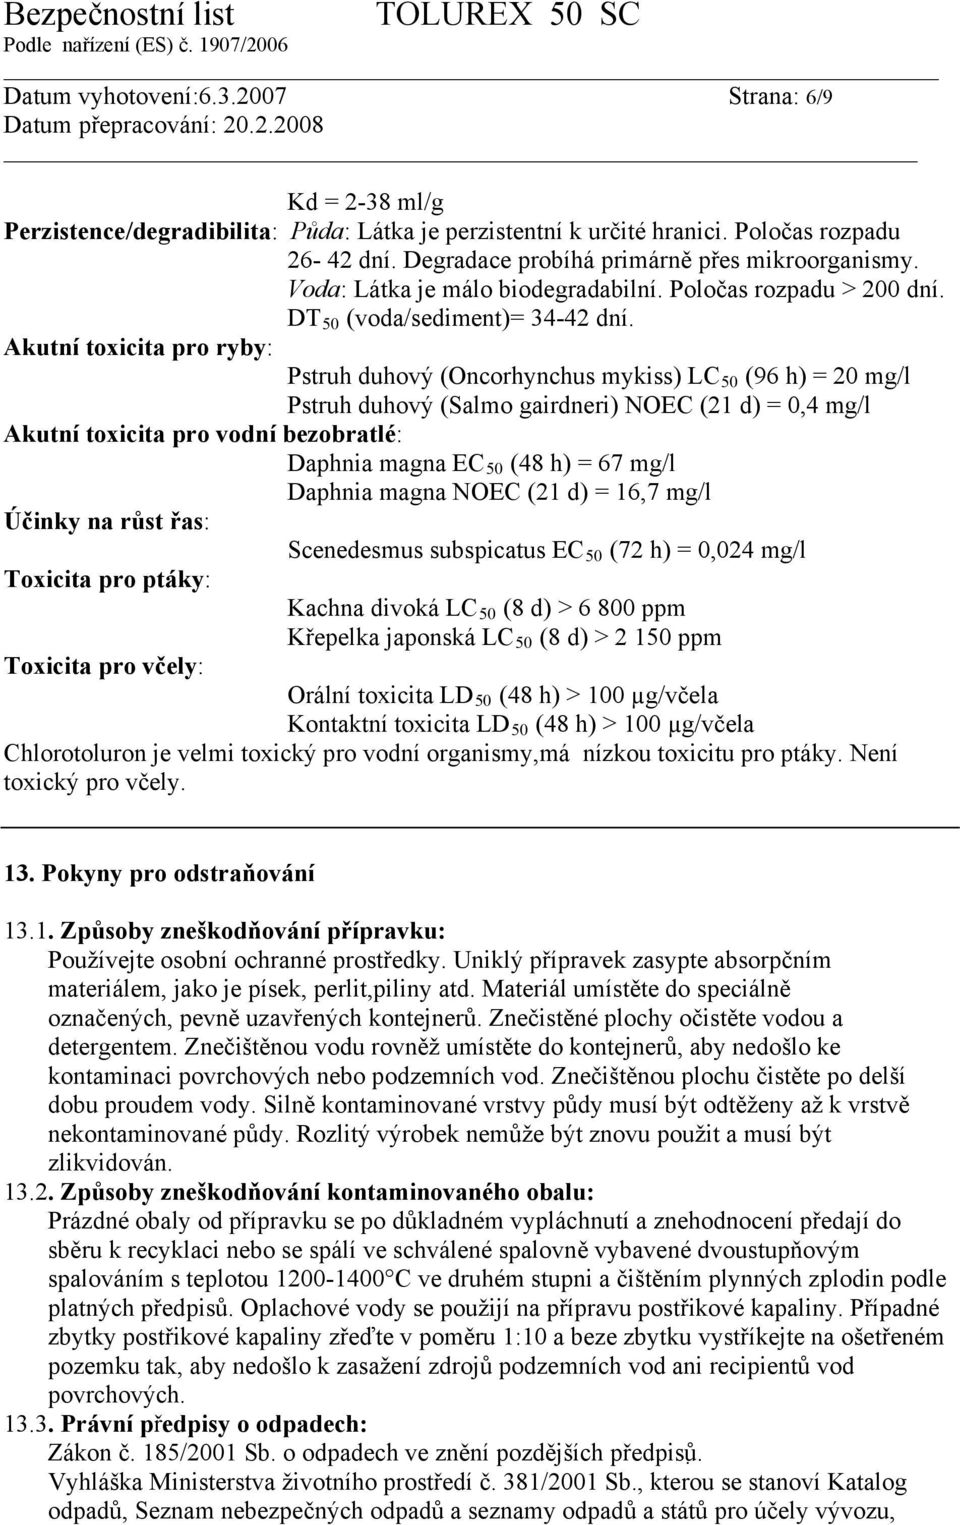 Akutní toxicita pro ryby: Pstruh duhový (Oncorhynchus mykiss) LC 50 (96 h) = 20 mg/l Pstruh duhový (Salmo gairdneri) NOEC (21 d) = 0,4 mg/l Akutní toxicita pro vodní bezobratlé: Daphnia magna EC 50